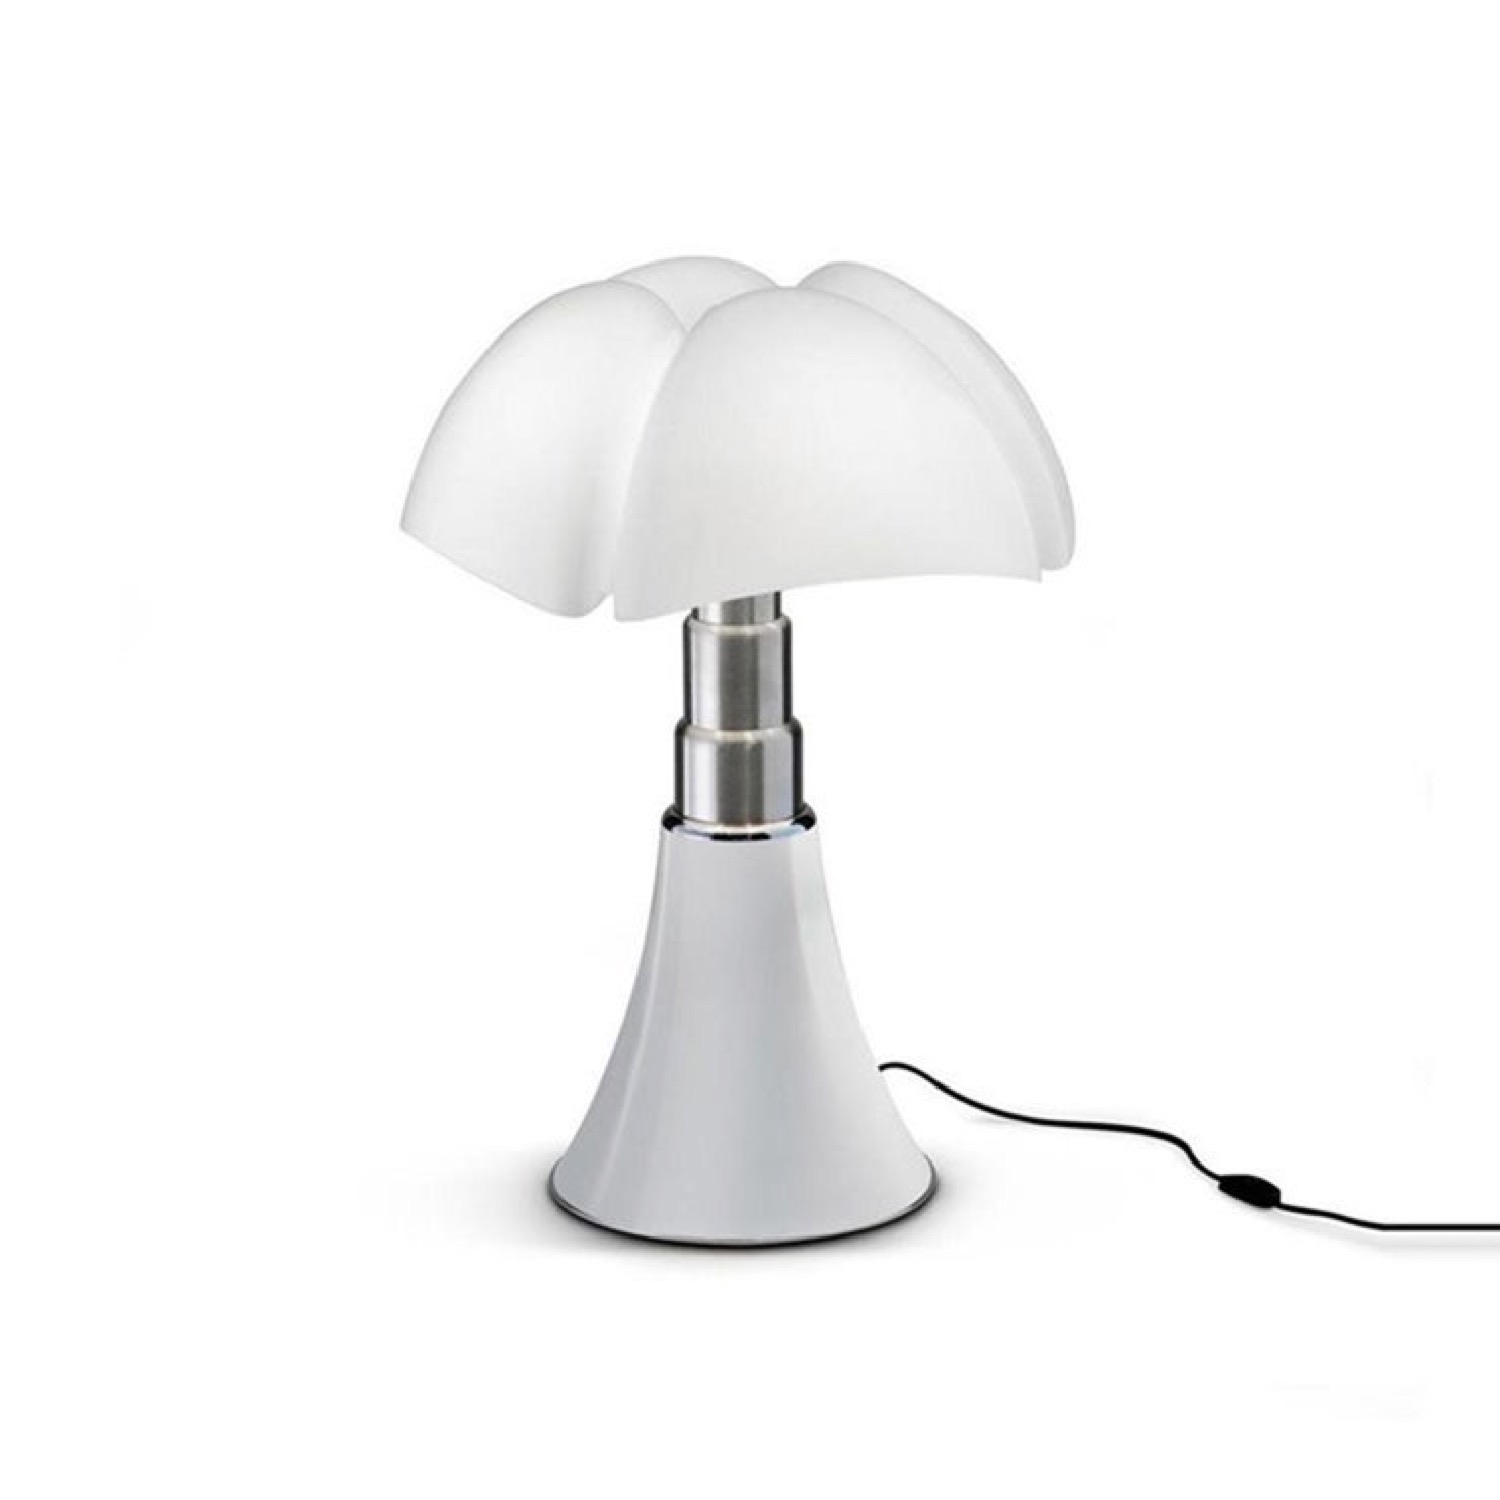 Lampe LED blanche avec variateur H35cm